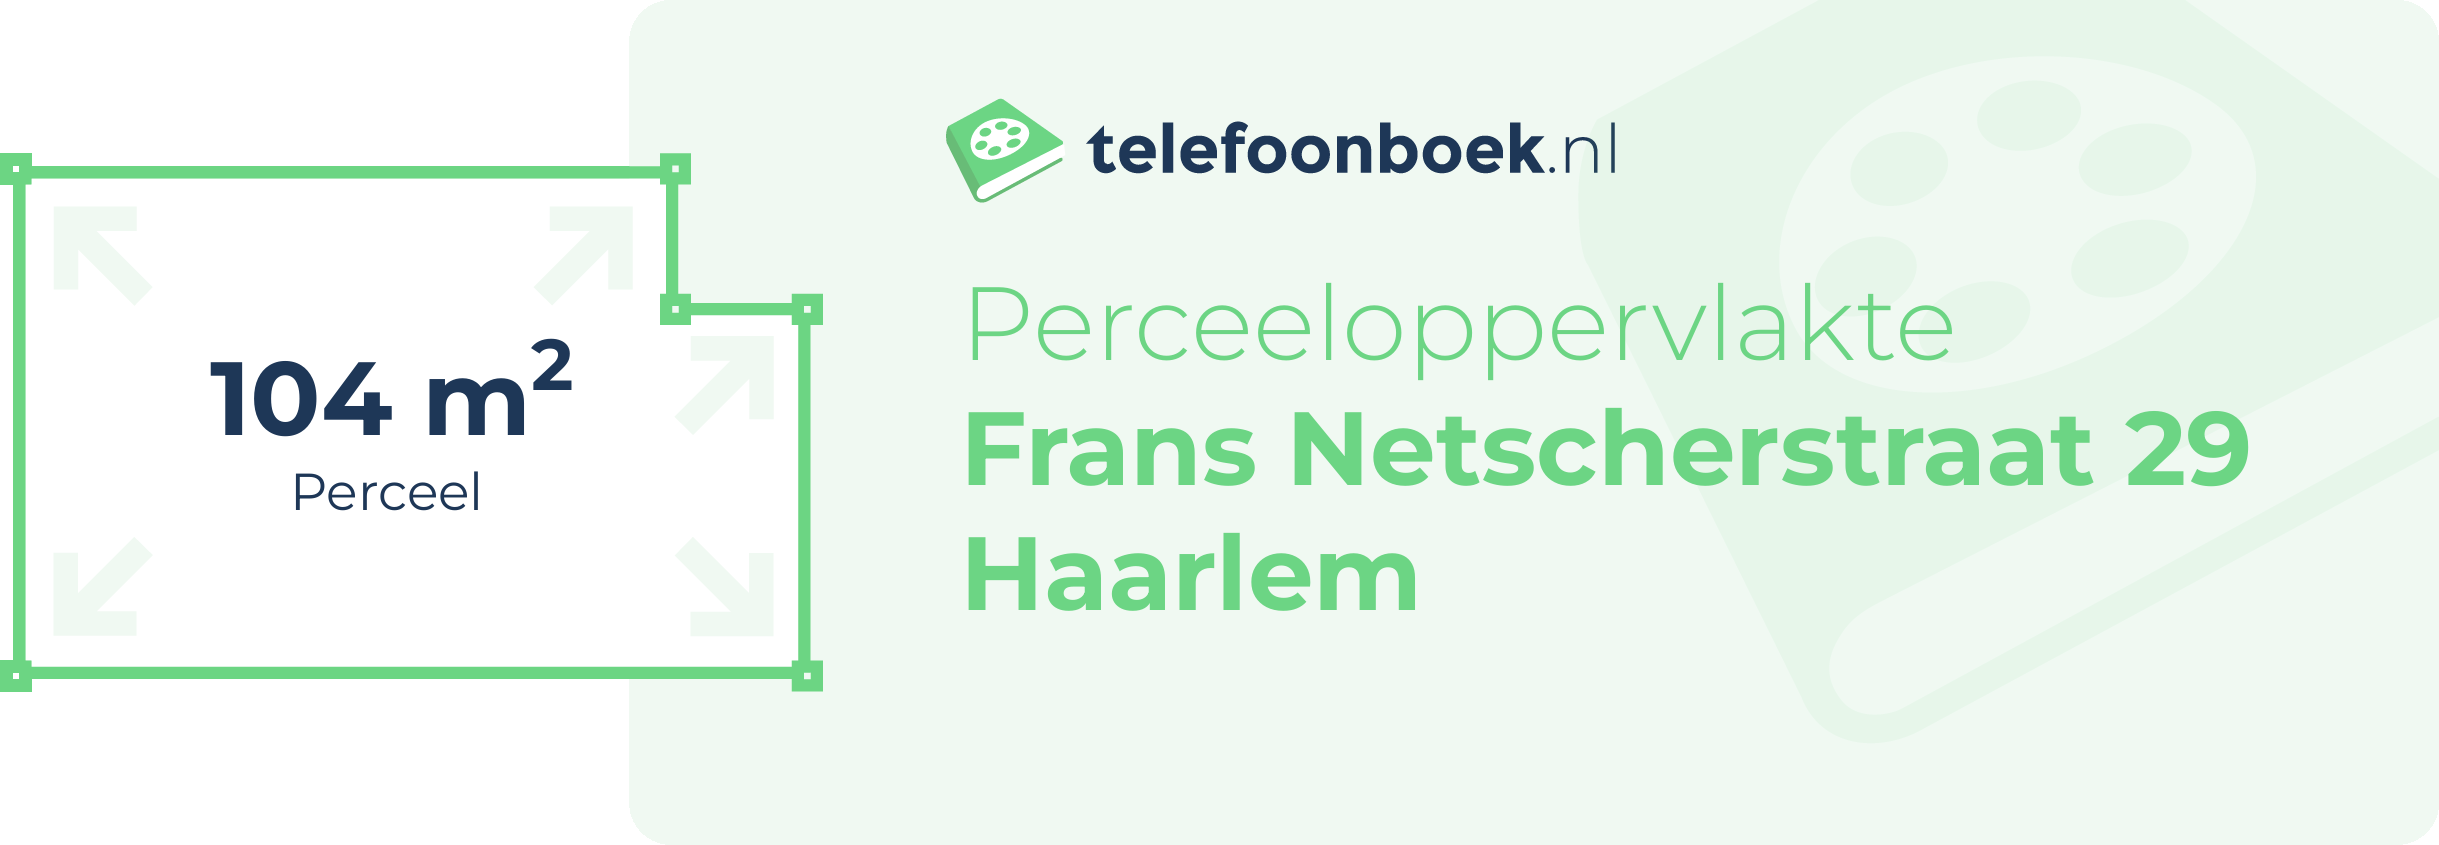 Perceeloppervlakte Frans Netscherstraat 29 Haarlem